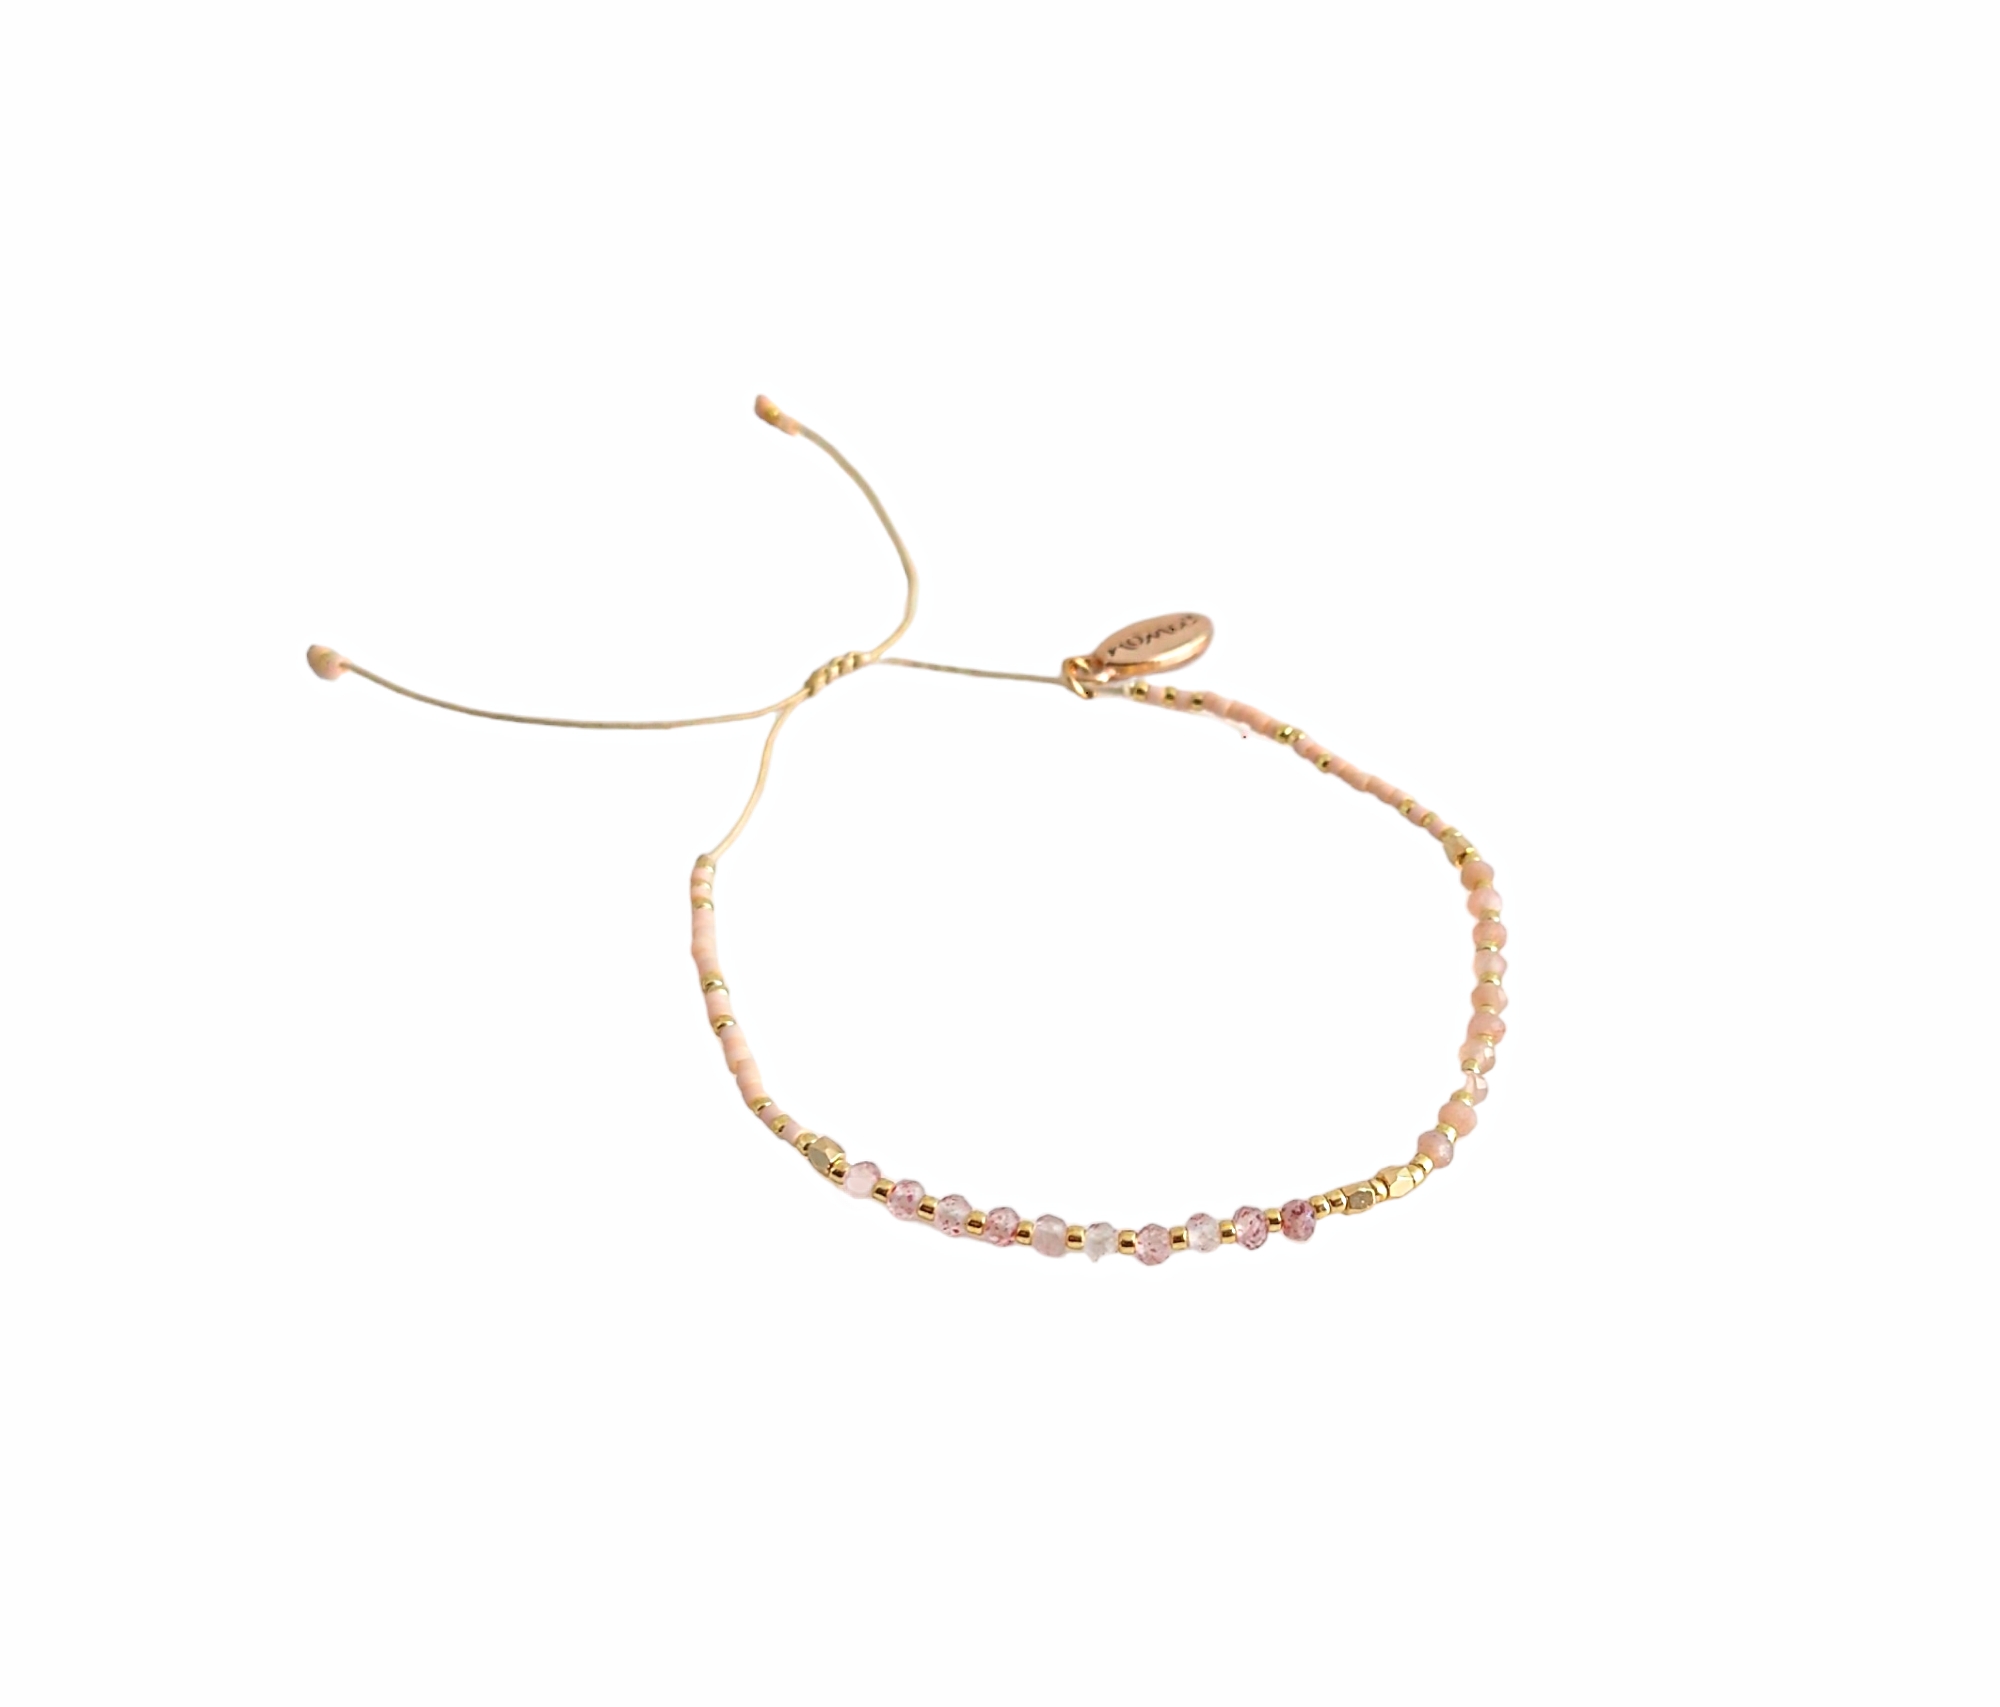 Noma armbånd med perler